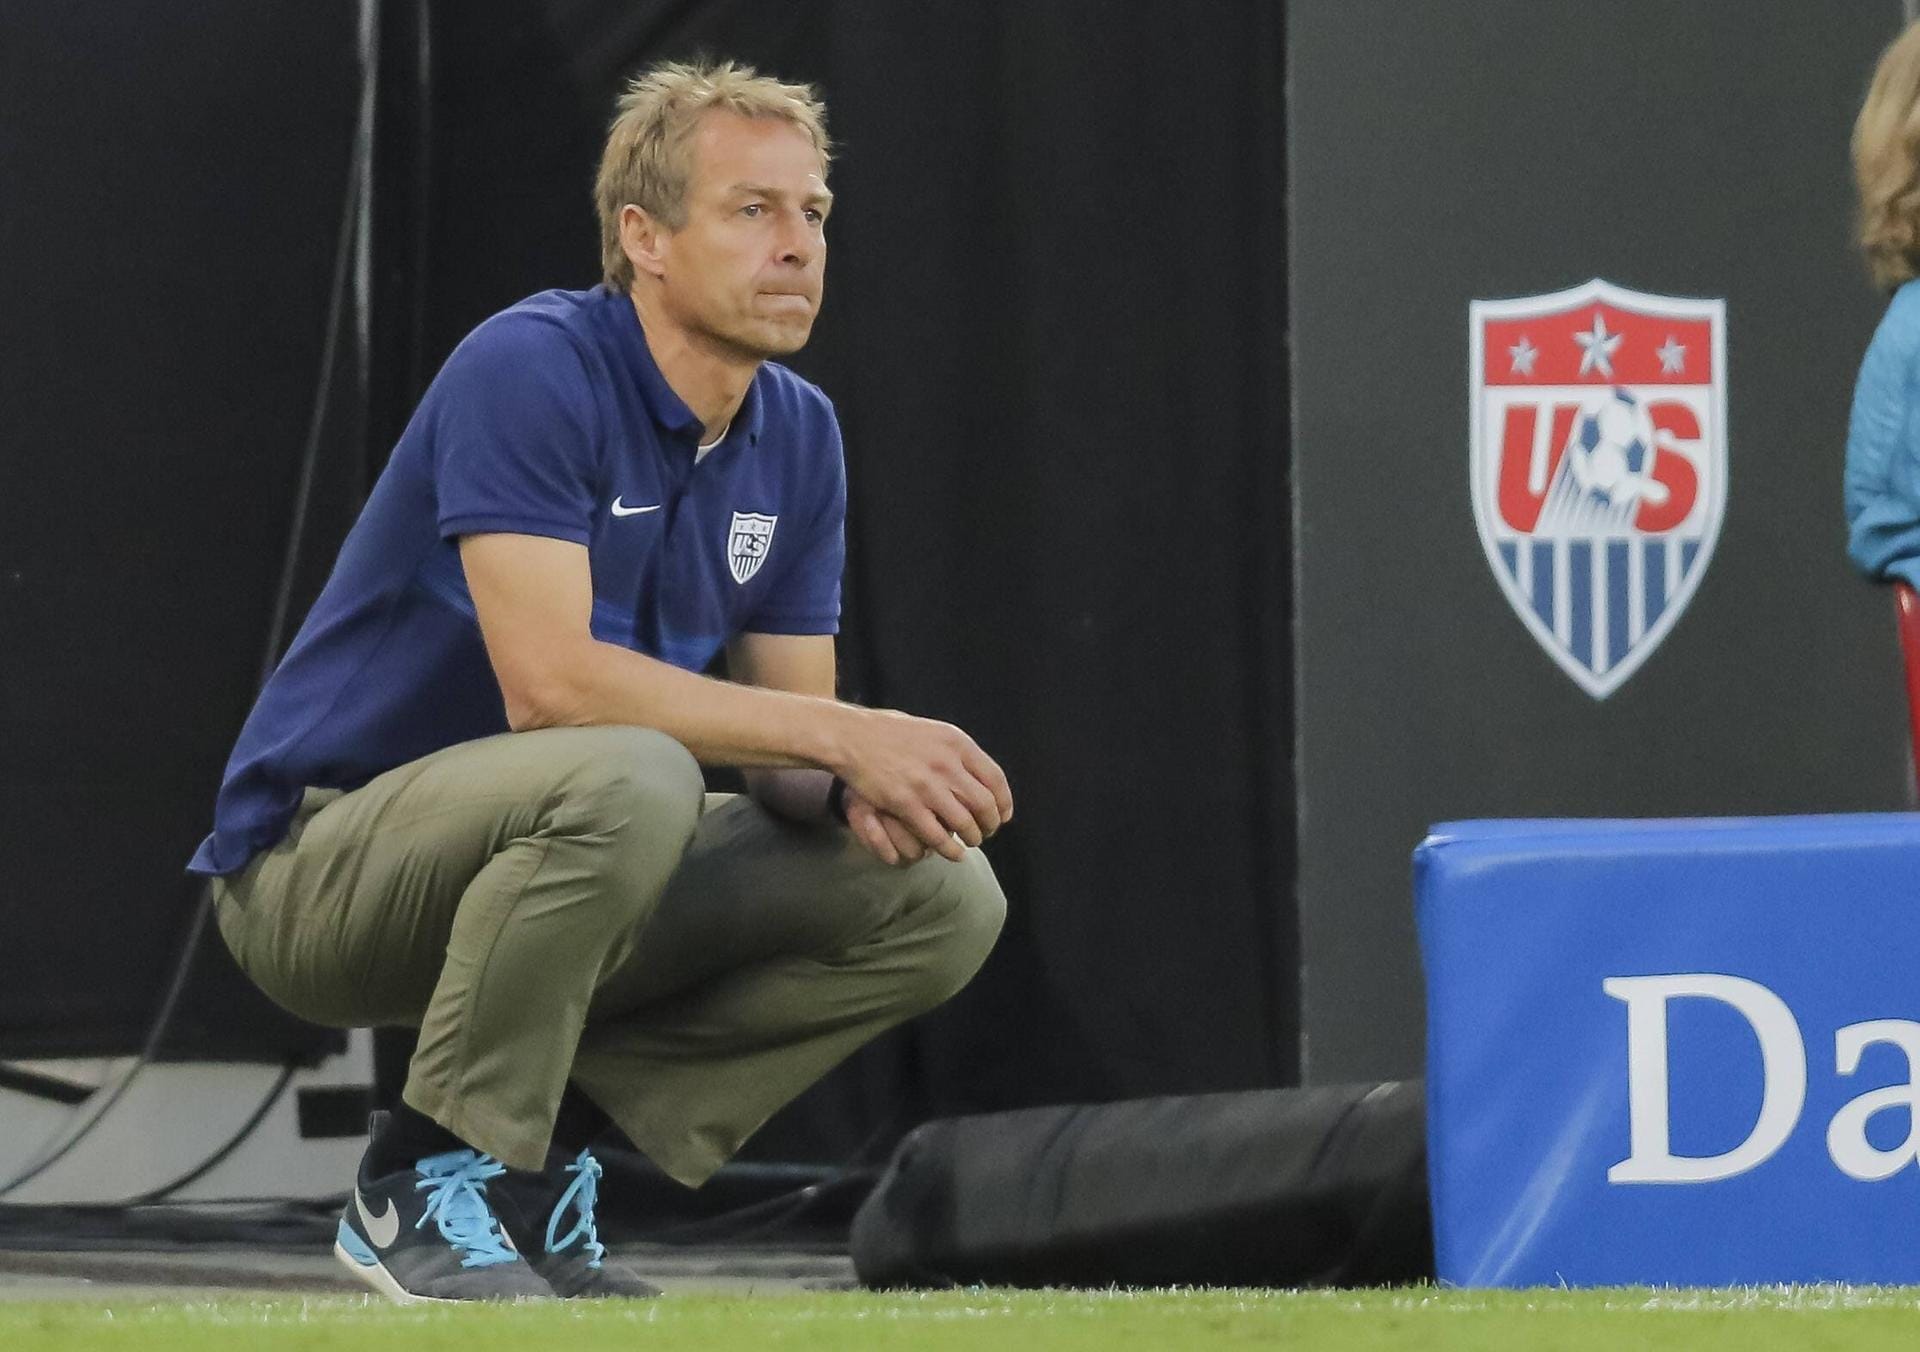 Insgesamt blieb Klinsmann fünf Jahre lang im Amt. Sein größter Erfolg war der Gewinn des CONCACAF Gold Cups 2013, der Kontinentalmeisterschaft für Nord- und Mittelamerika und der Karibik, und die WM-Teilnahme 2014. Doch 2016 musste er nach verpasster WM-Qualifikation den Hut nehmen. Sein ehrgeiziges Ziel Weltspitze hatte Klinsmann meilenweit verpasst und lag am Ende in der Weltrangliste sogar hinter Costa Rica und Mexiko.